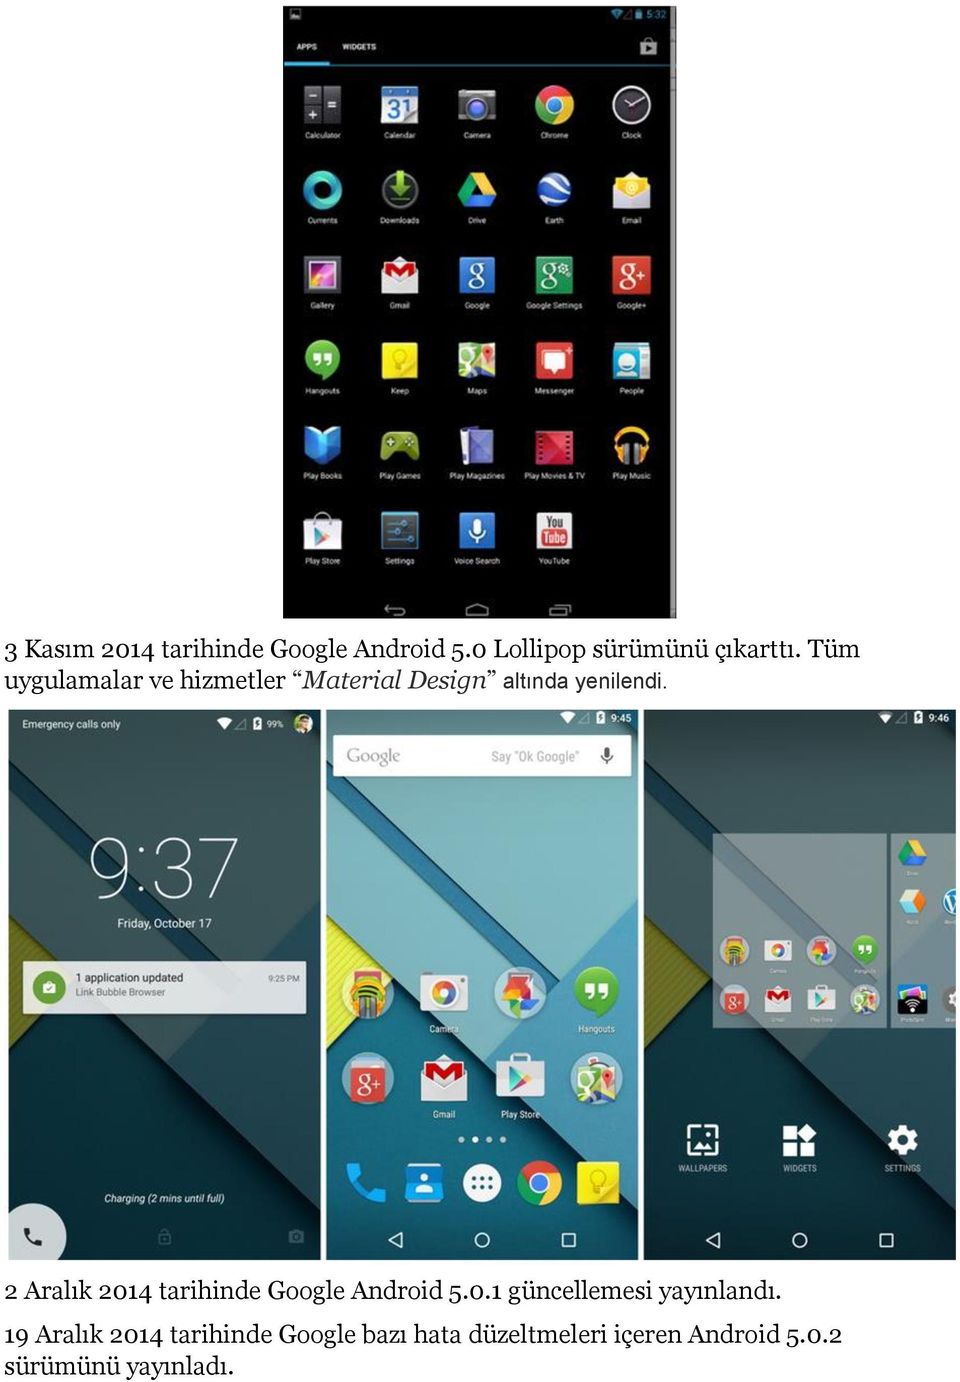 2 Aralık 2014 tarihinde Google Android 5.0.1 güncellemesi yayınlandı.